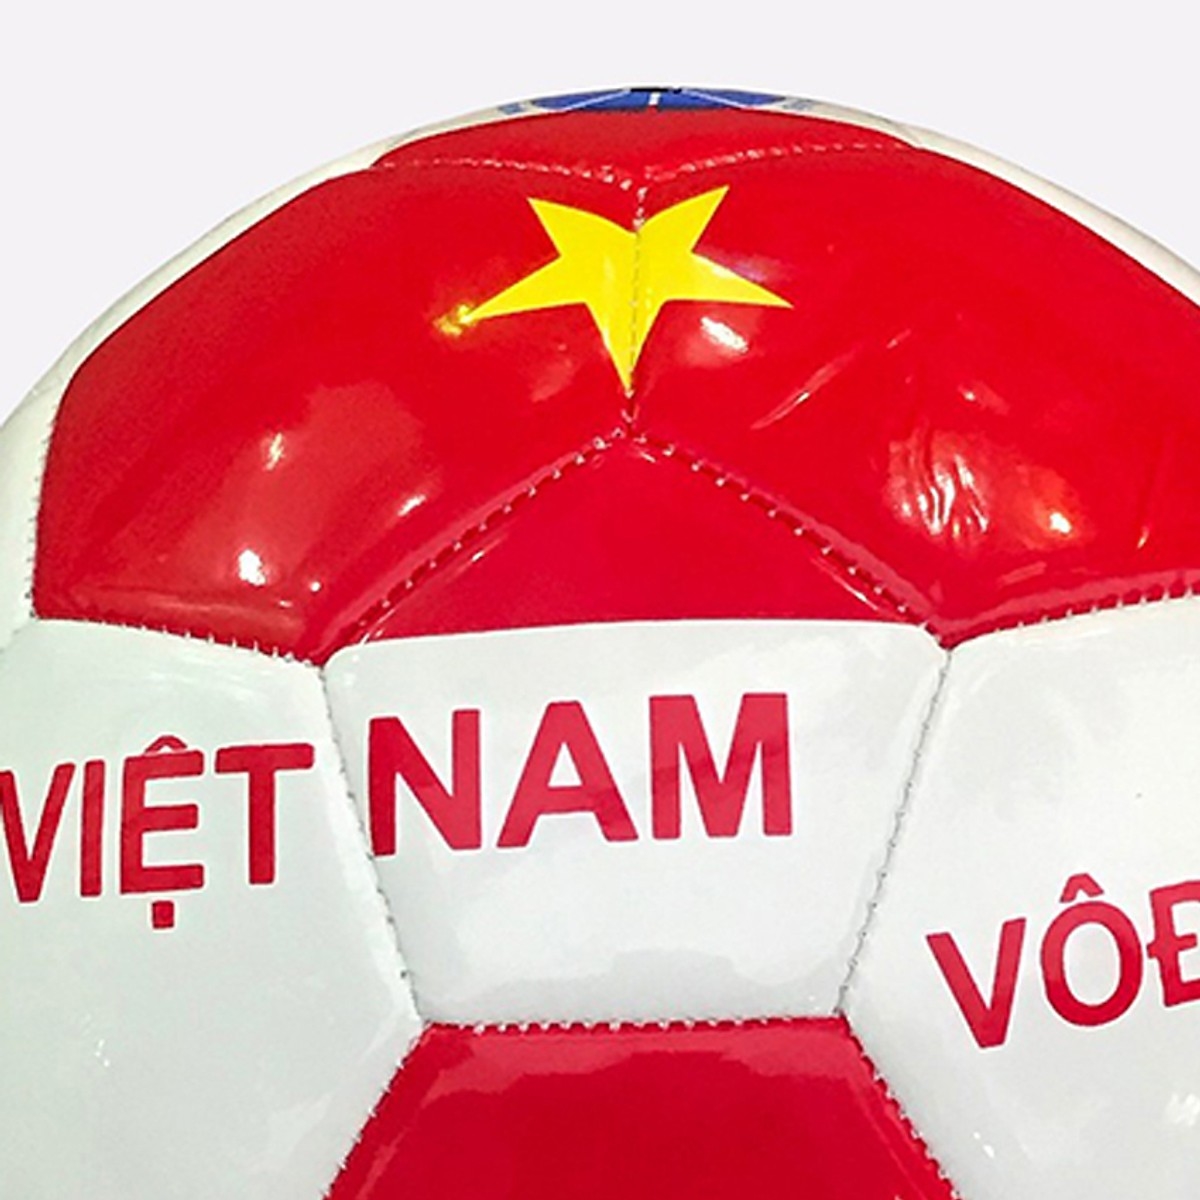 Quả Bóng Đá Động Lực Ebet Cờ Việt Nam Vô Địch Size 4